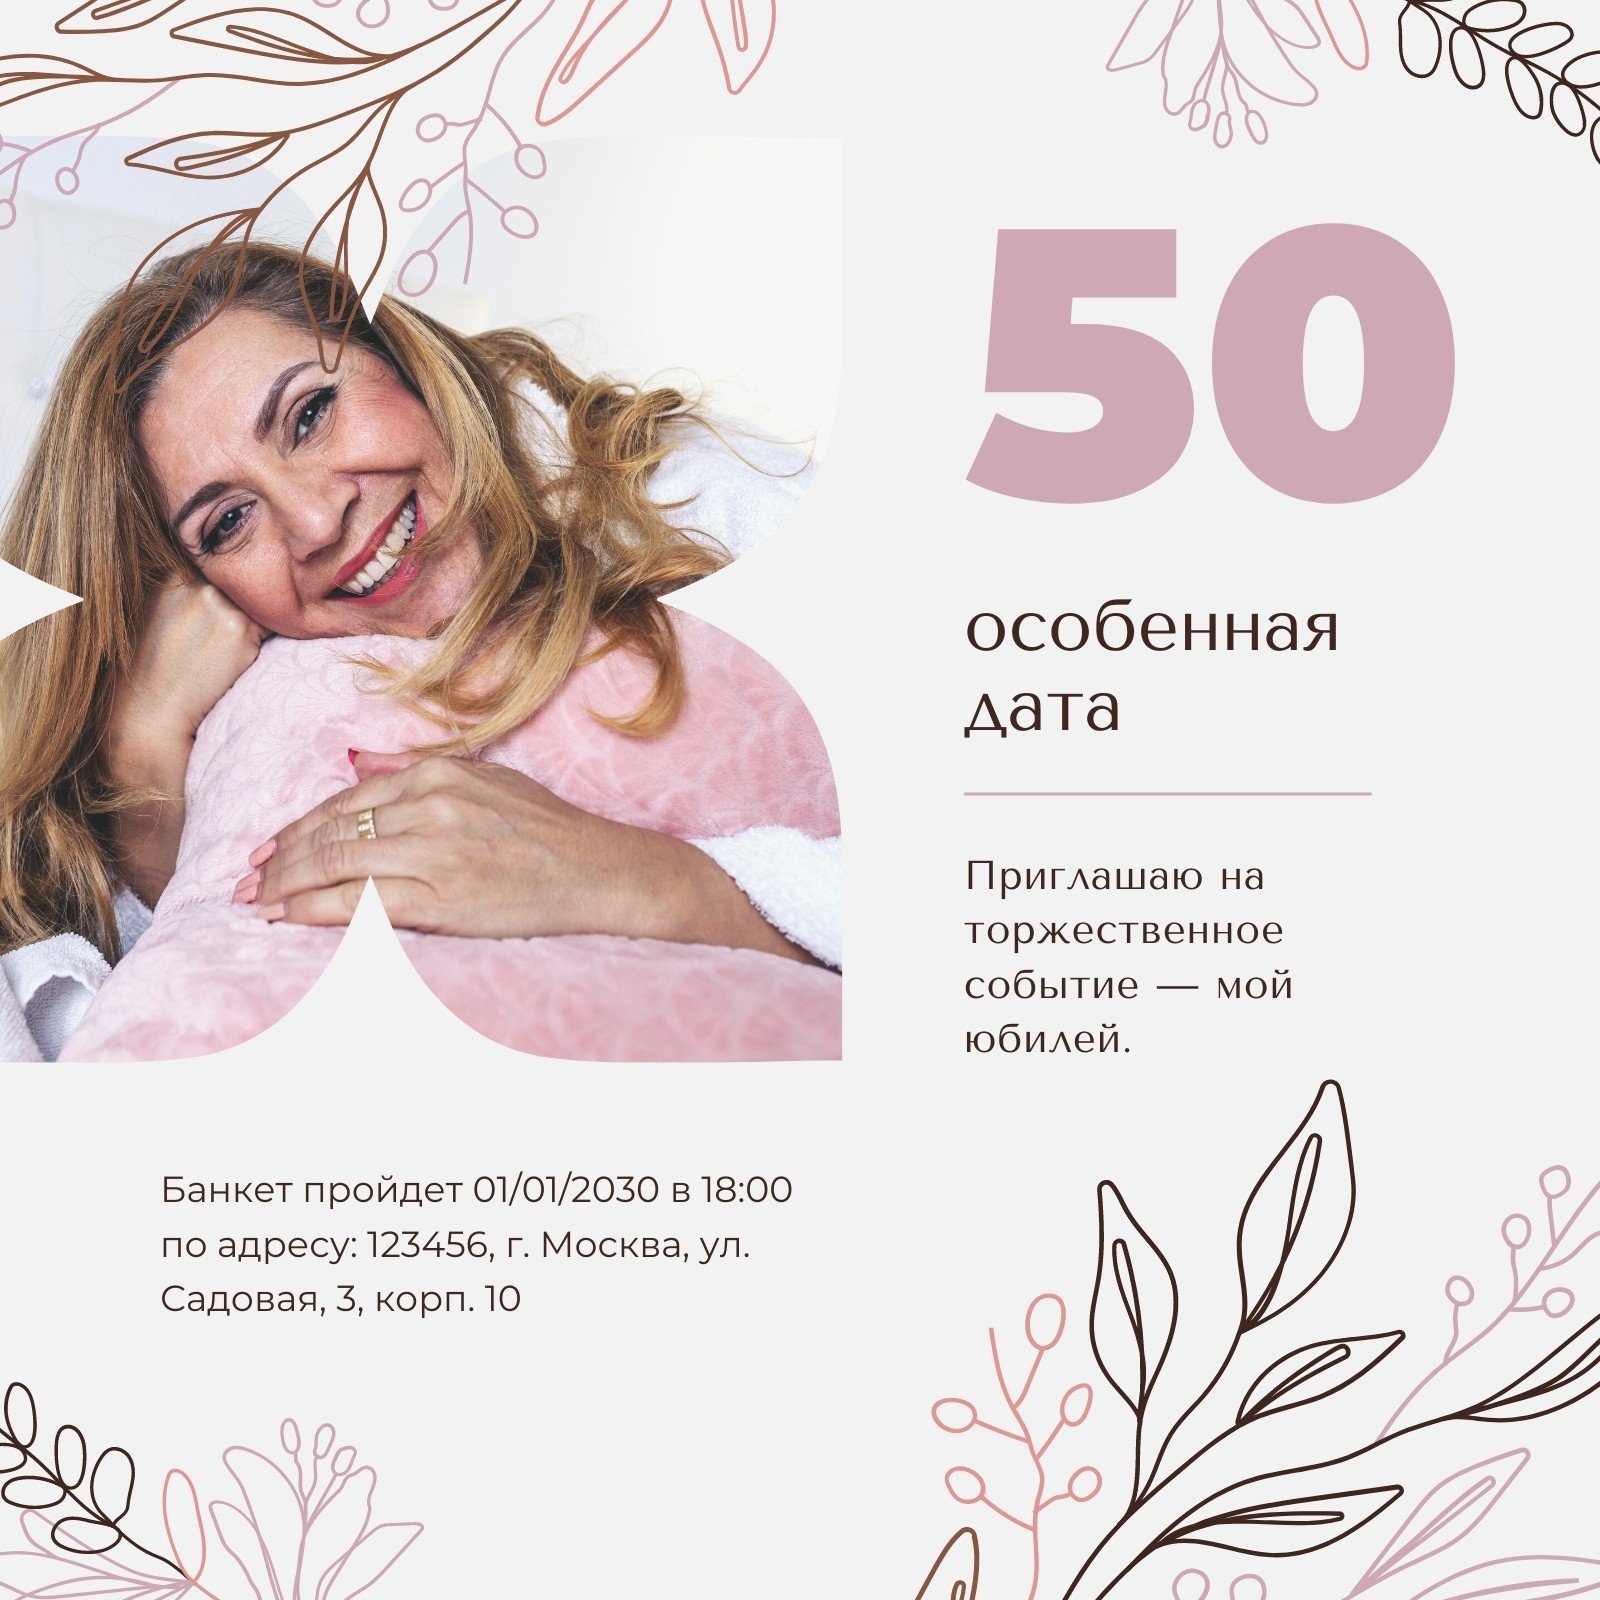 Сценарий юбилея 50 лет женщине прикольный с конкурсами